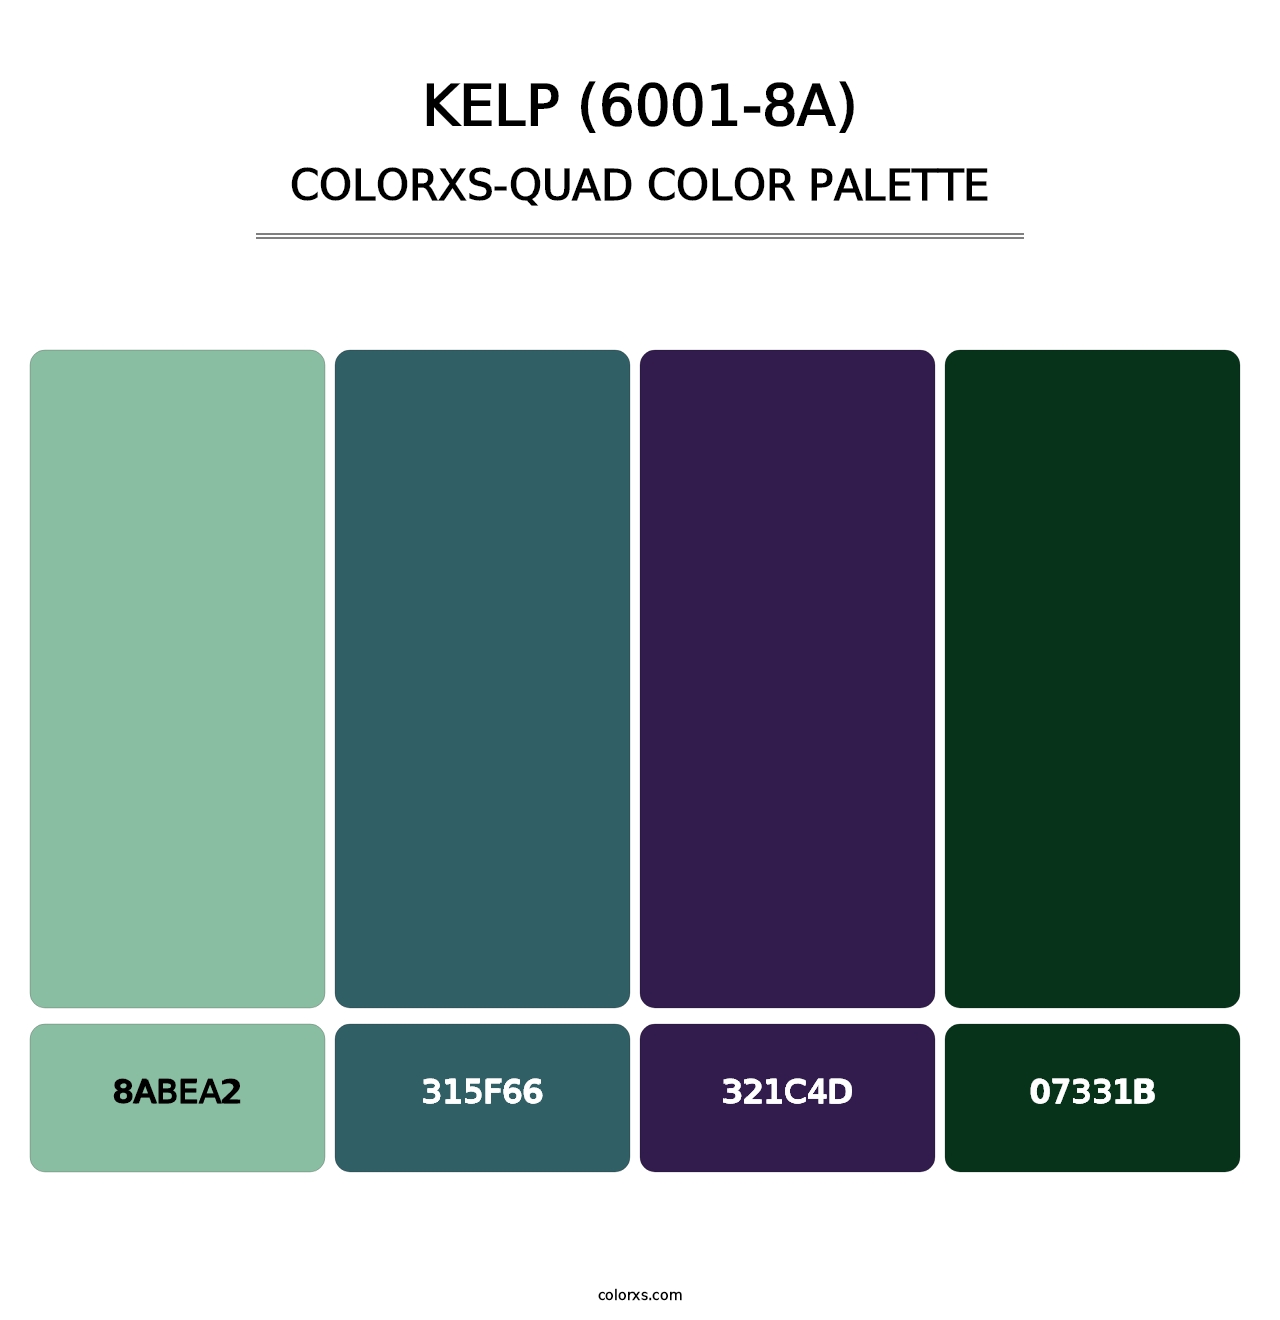 Kelp (6001-8A) - Colorxs Quad Palette